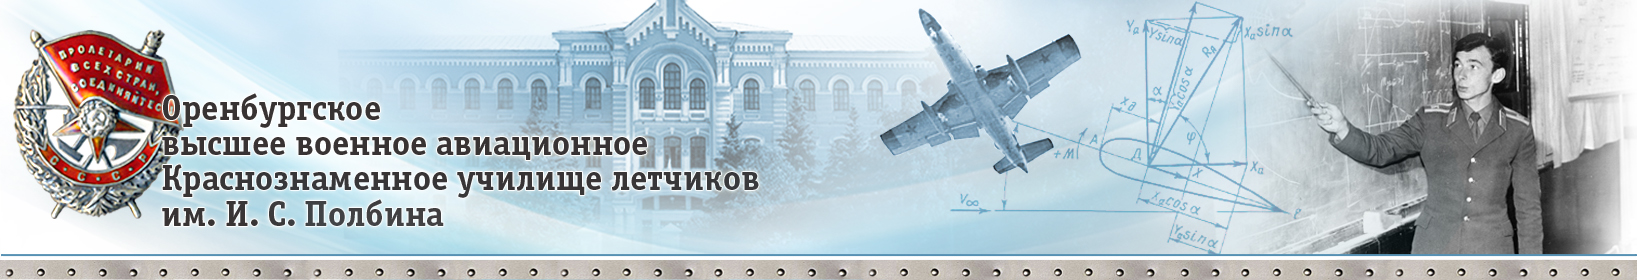 ОВВАКУЛ - Оренбургское высшее военное авиационное Краснознаменное училище летчиков имени И. С. Полбина